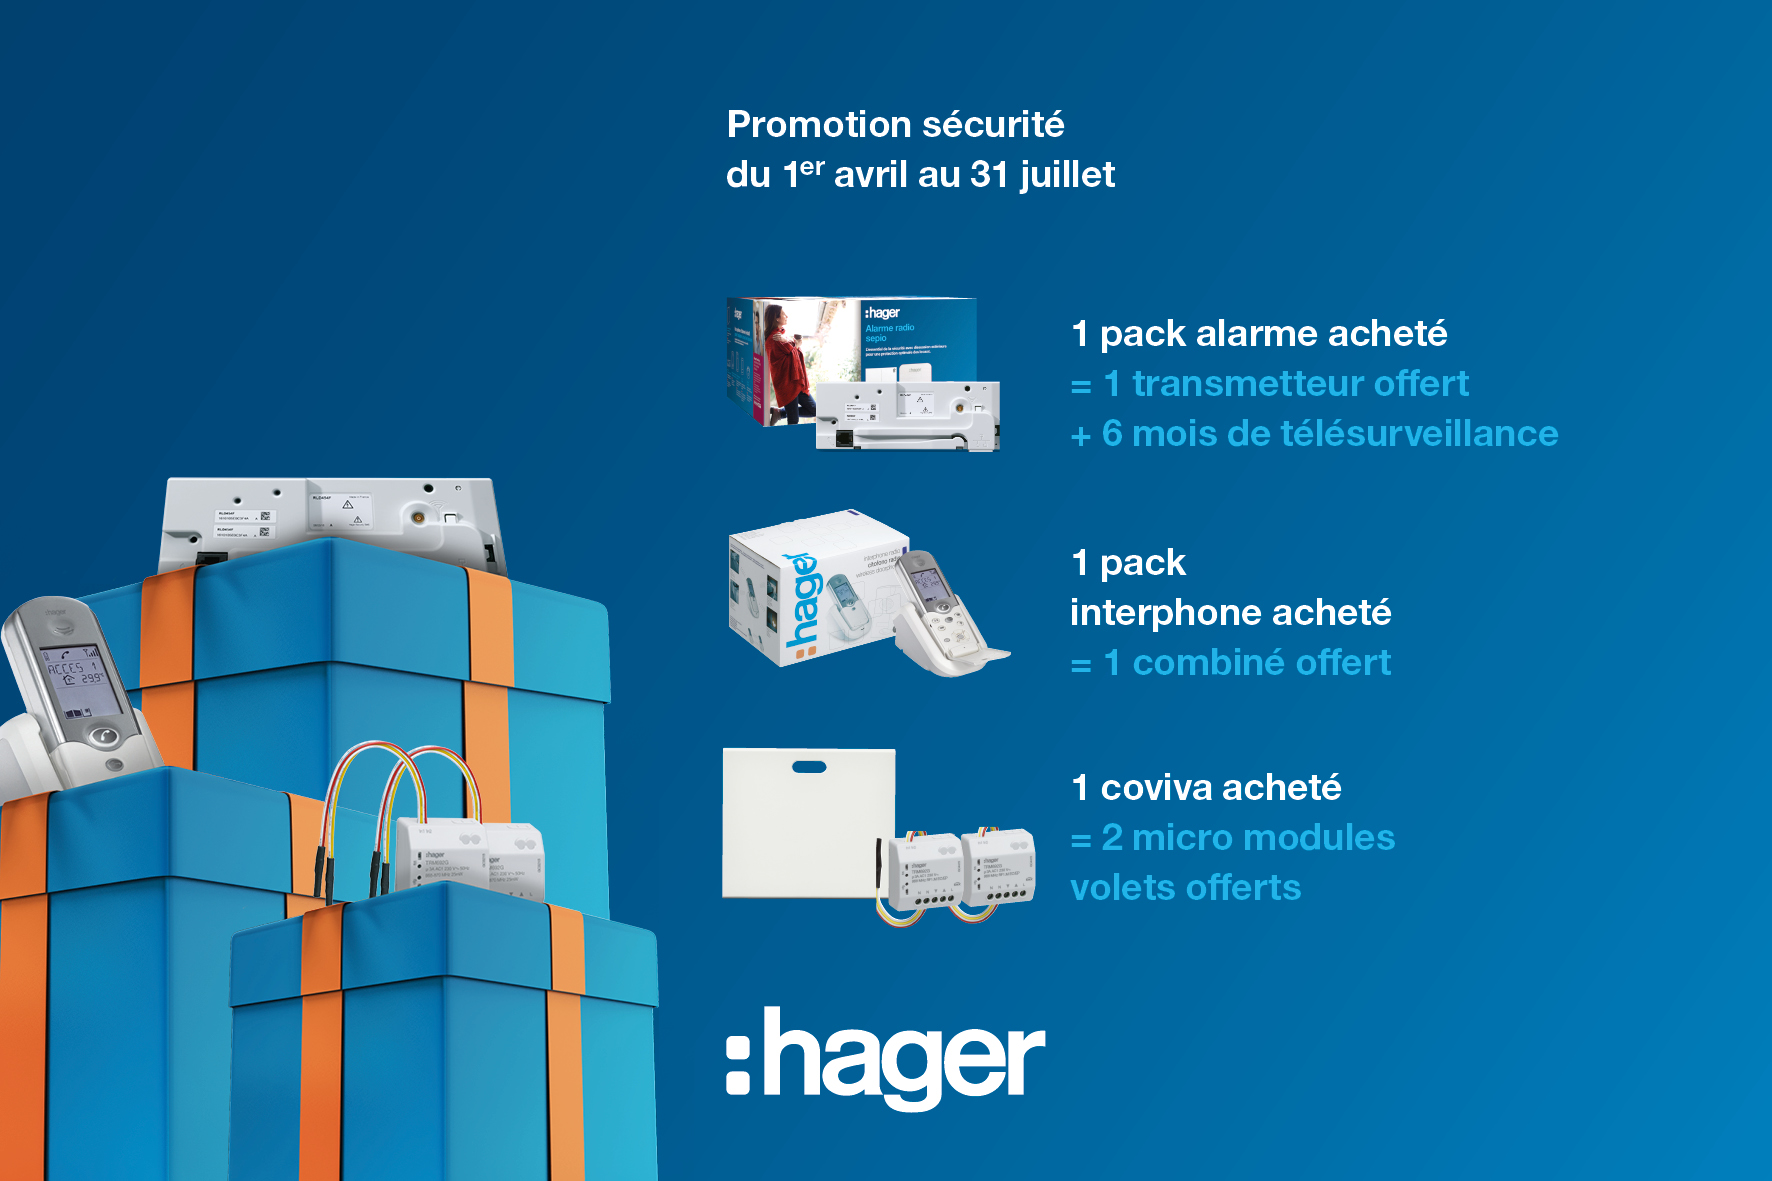 Opération Sécurité & Logement Connecté 2019, Hager vous fait gagner !